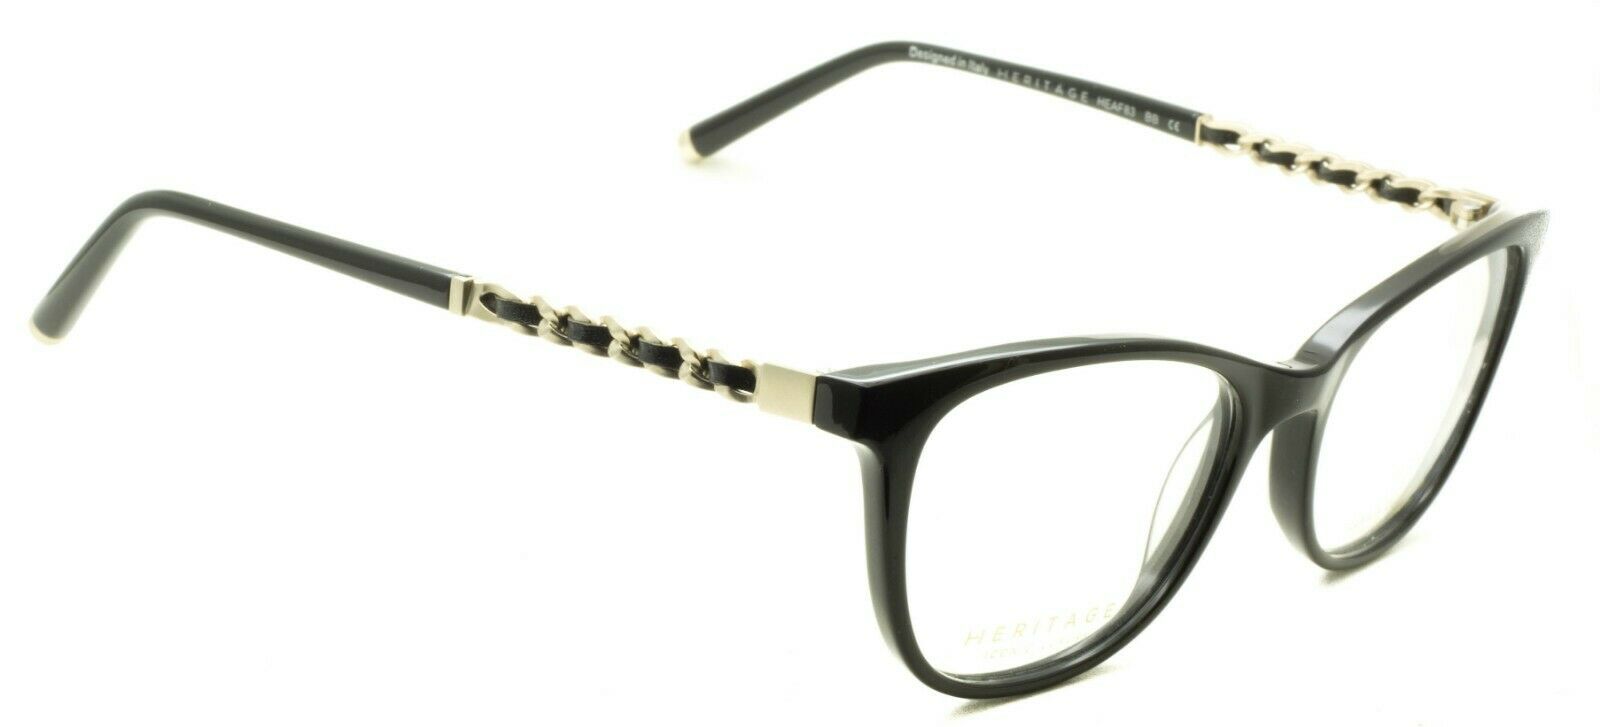 HERITAGE Iconic Luxury HEAF83 BB Eyewear FRAMES Eyeglasses RX Optical Glasses